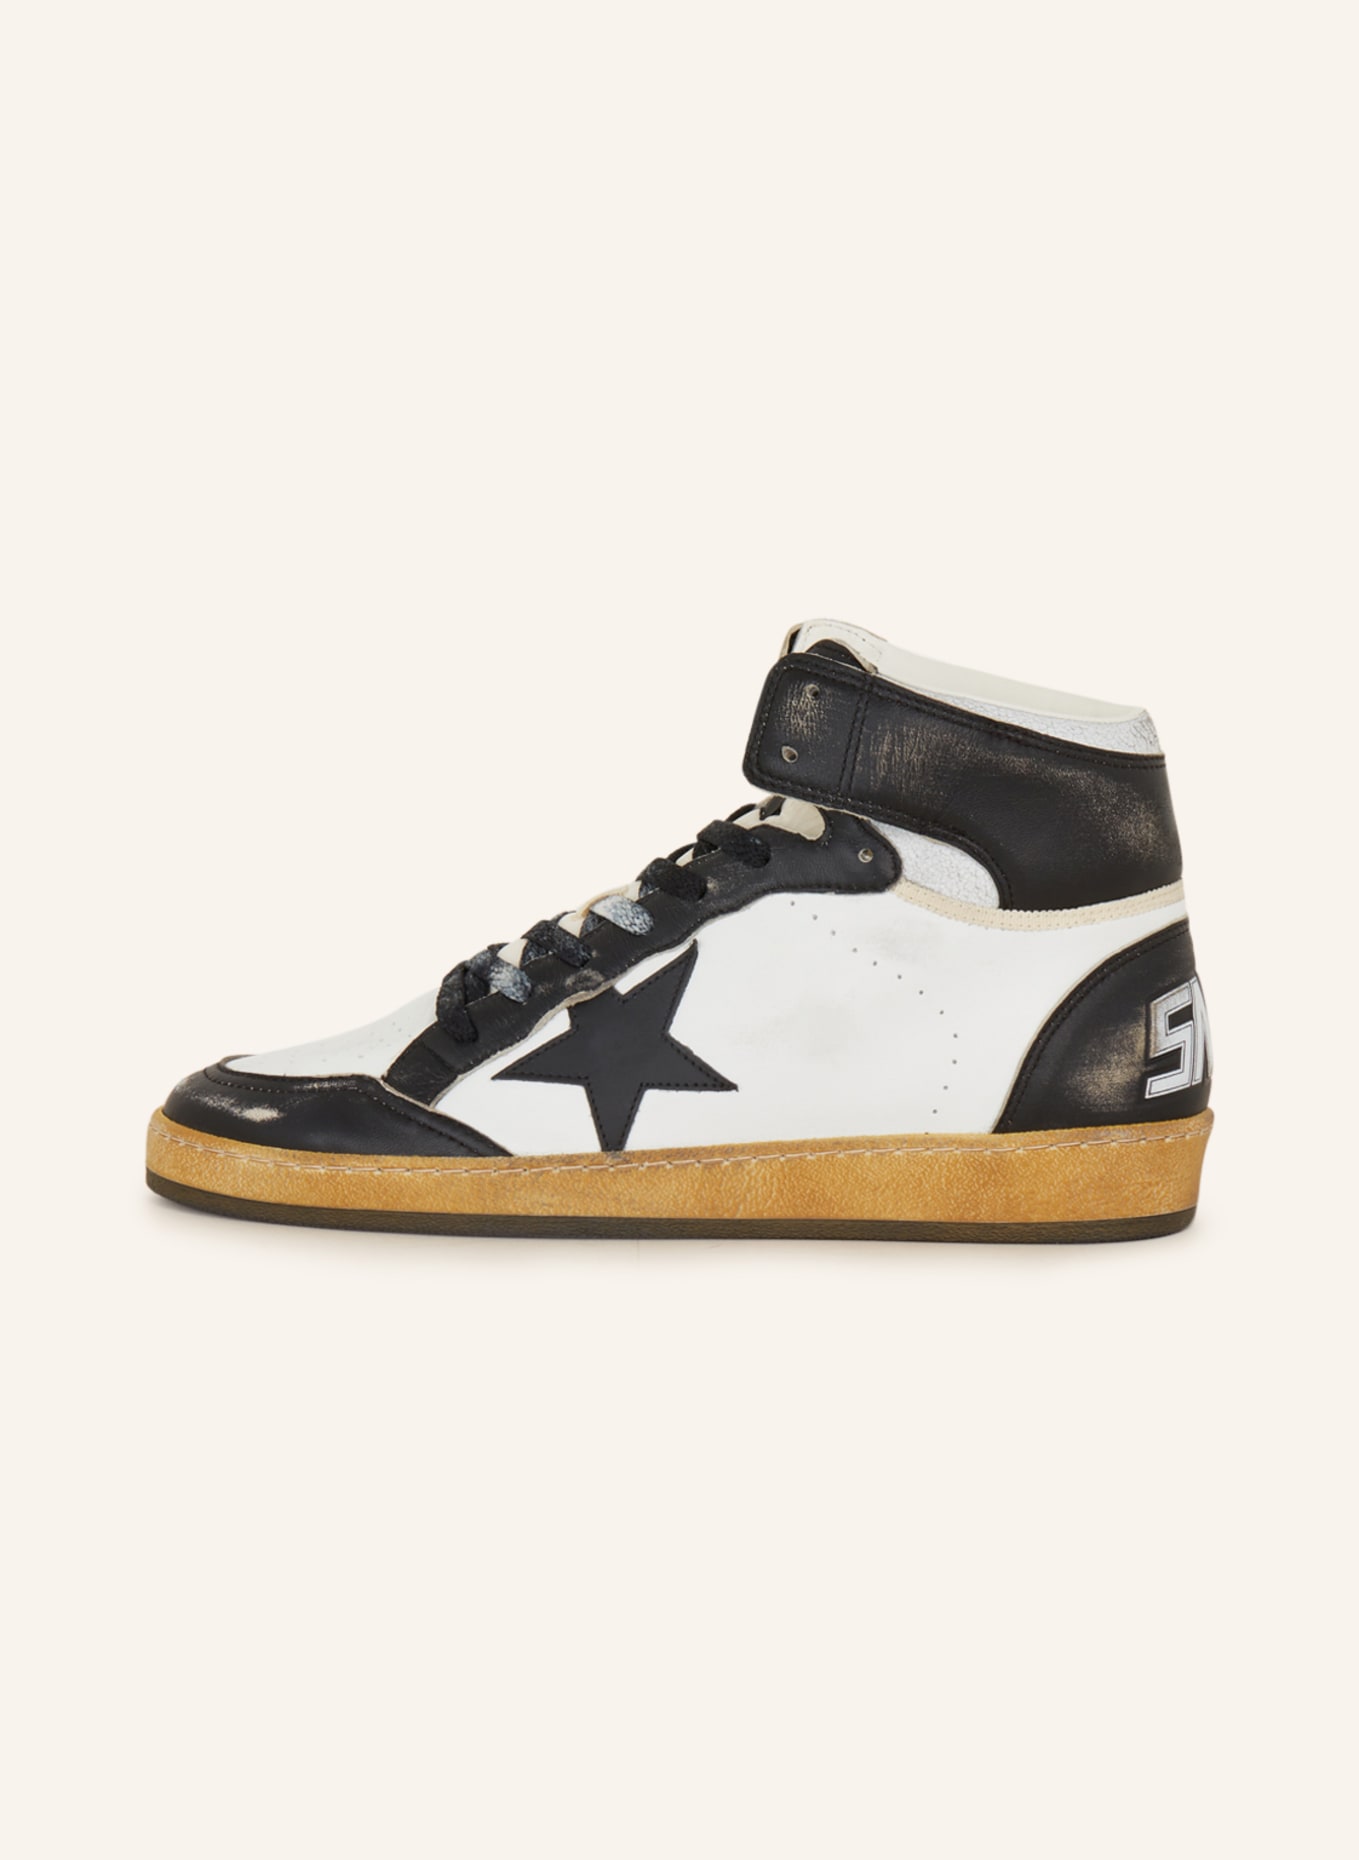 GOLDEN GOOSE Hightop-Sneaker SKY STAR, Farbe: WEISS/ SCHWARZ (Bild 4)